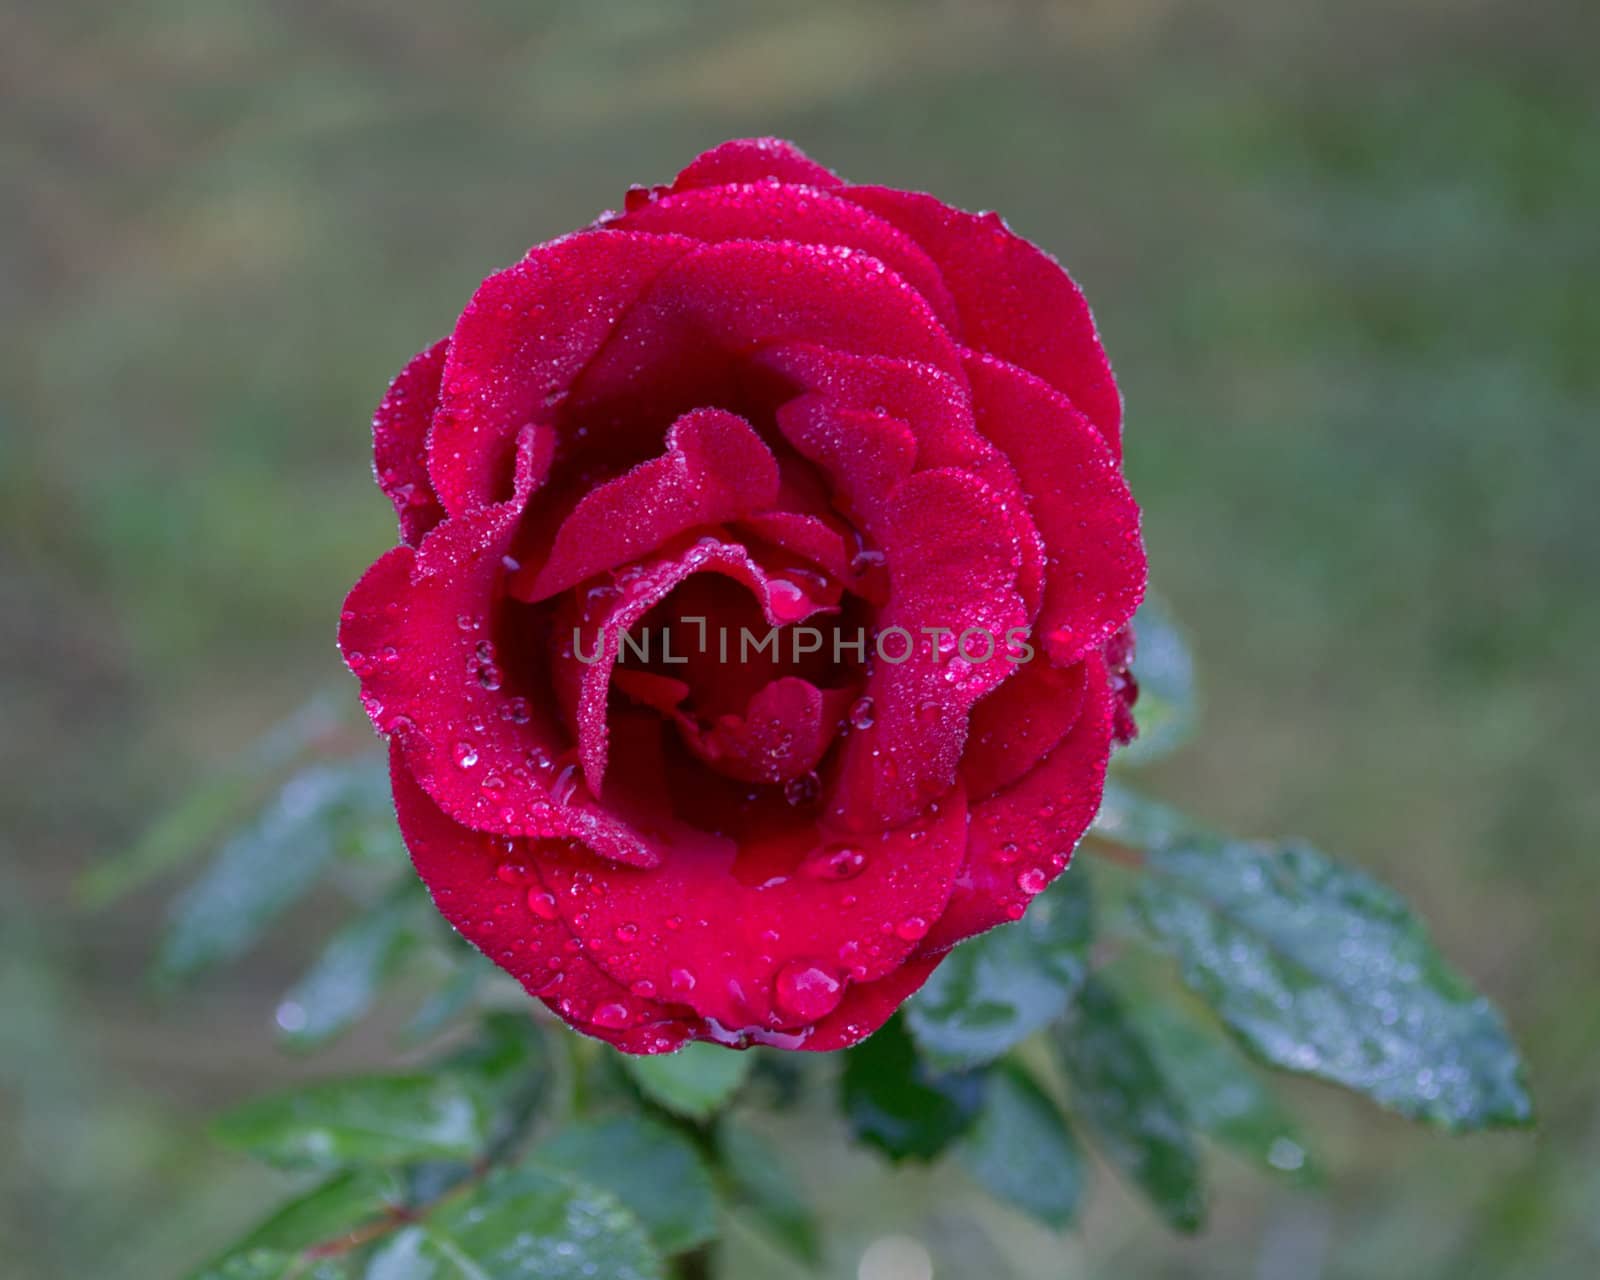 Closeup image of dark red rose.